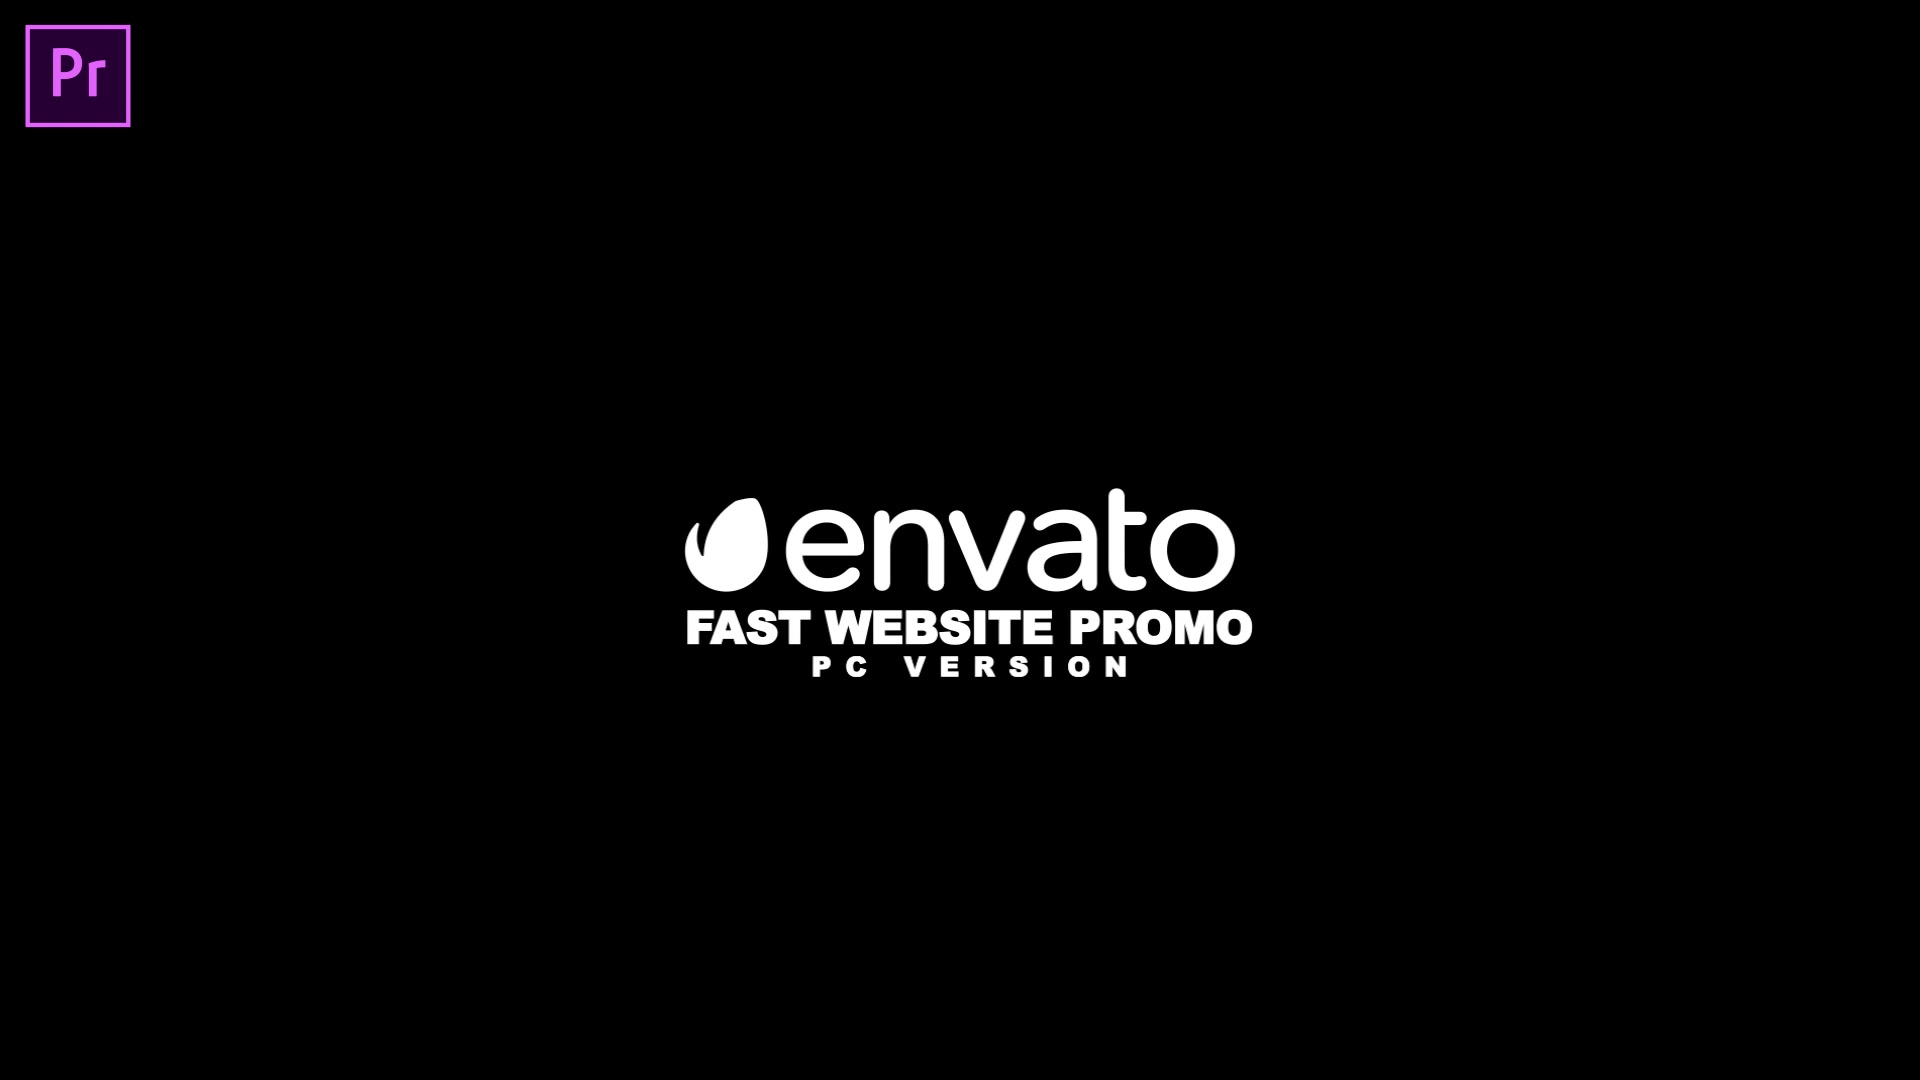 Fast Website Promo Premiere Pro version Videohive 33625280 Premiere Pro Image 8